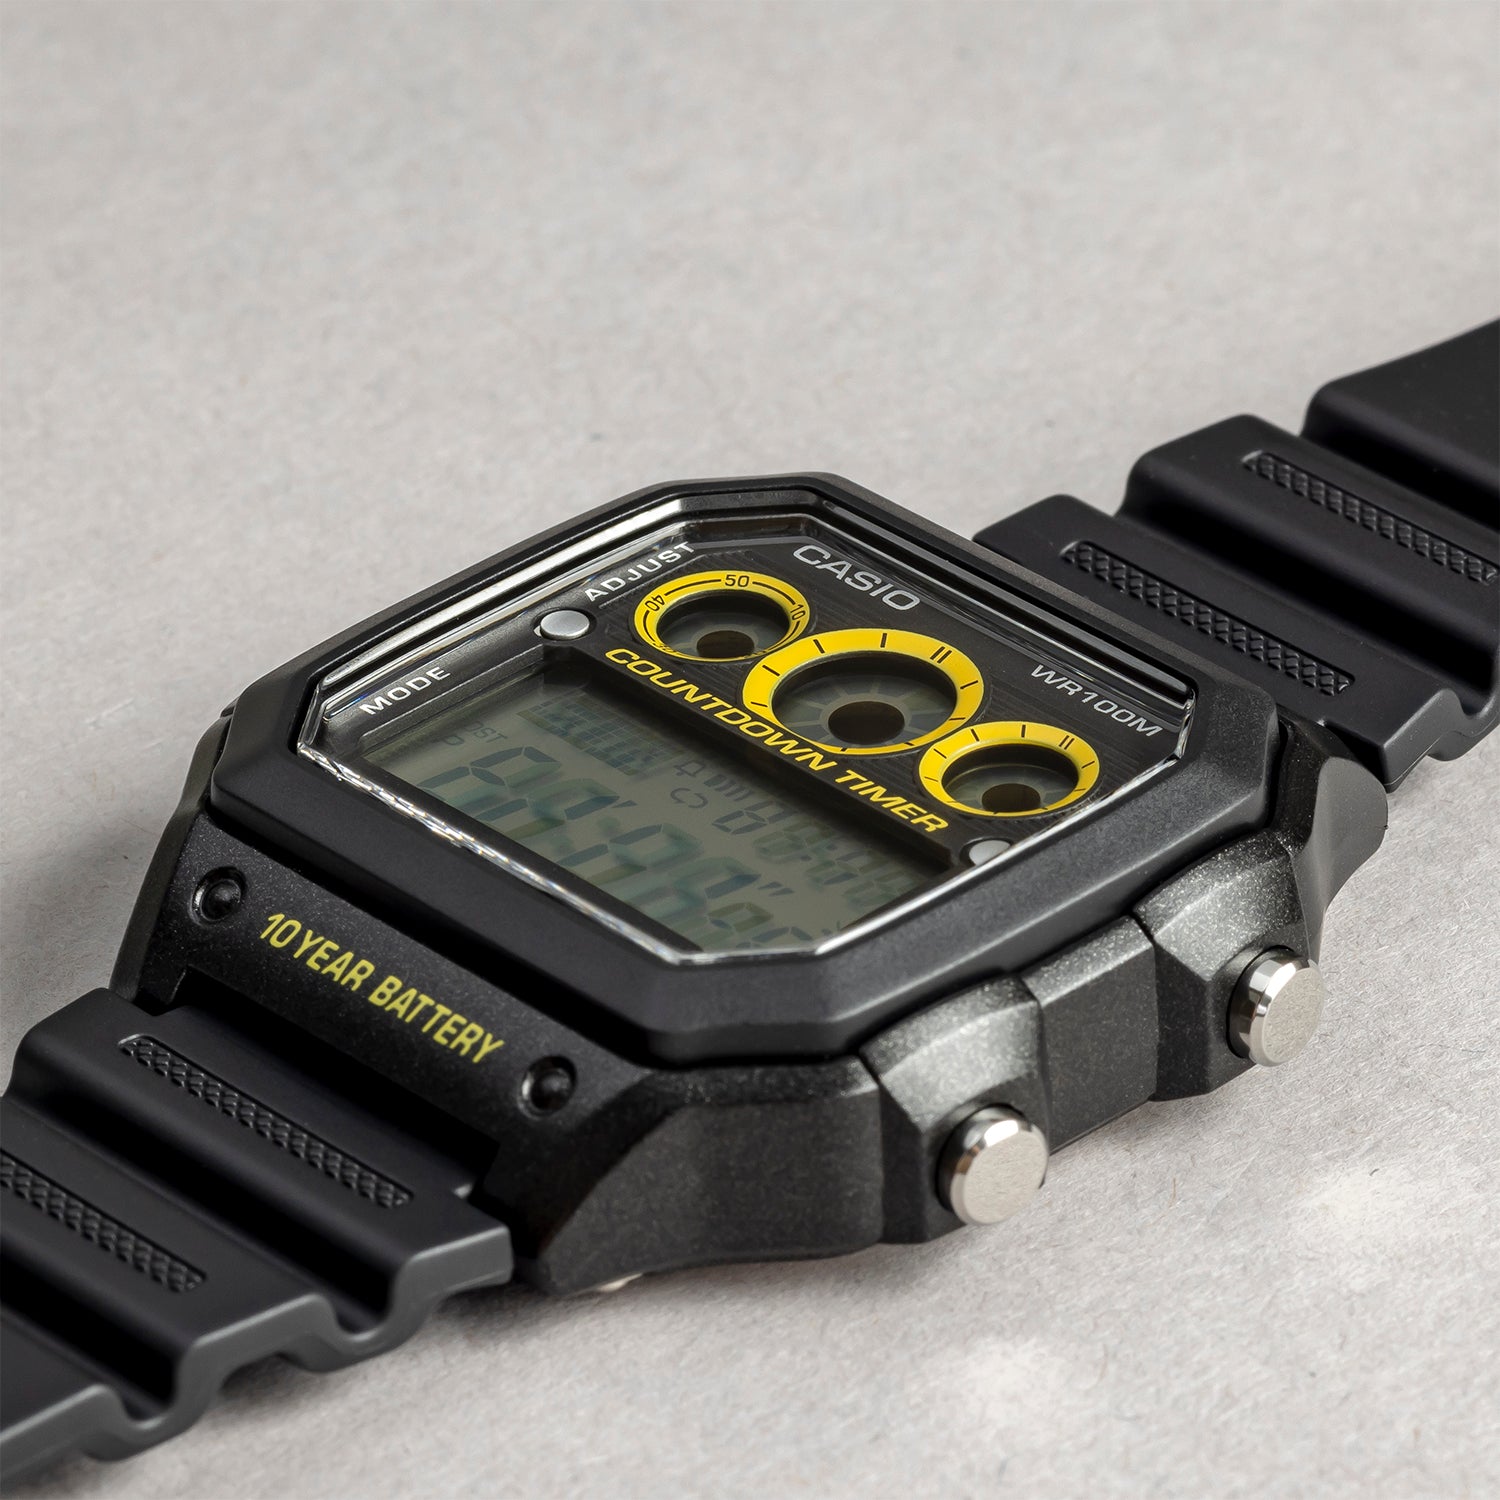 腕時計 CASIO カシオ 海外モデル AE-1300WH-8A チープカシオ ワールドタイム レフリータイマー デジタル メンズ